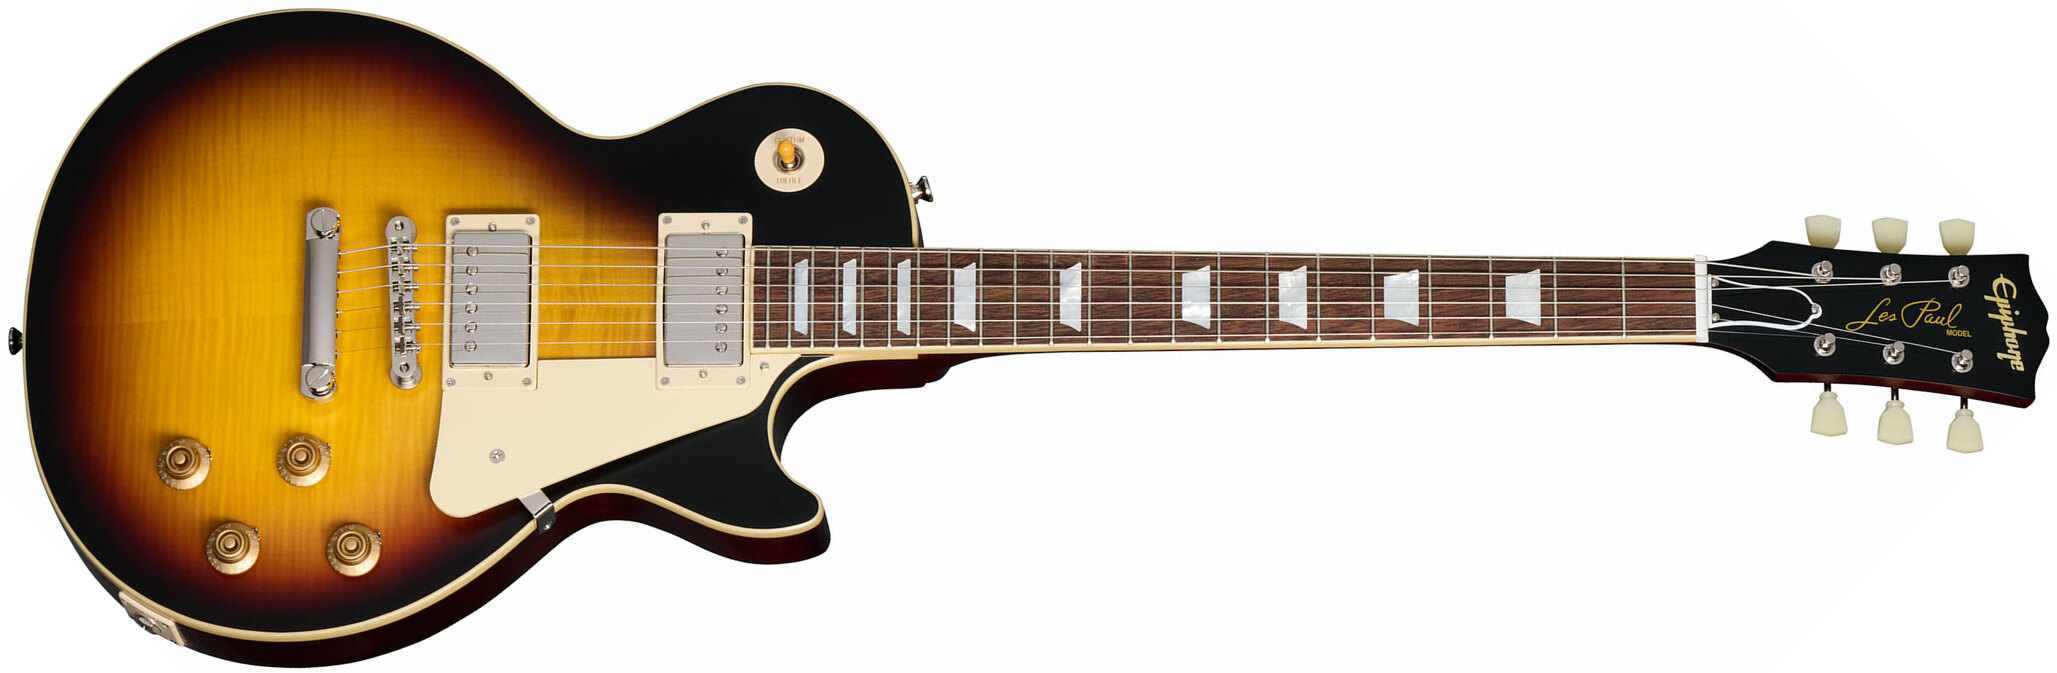 Epiphone 1959 Les Paul Standard Inspired By 2h Gibson Ht Lau - Vos Tobacco Burst - Guitare Électrique Single Cut - Main picture